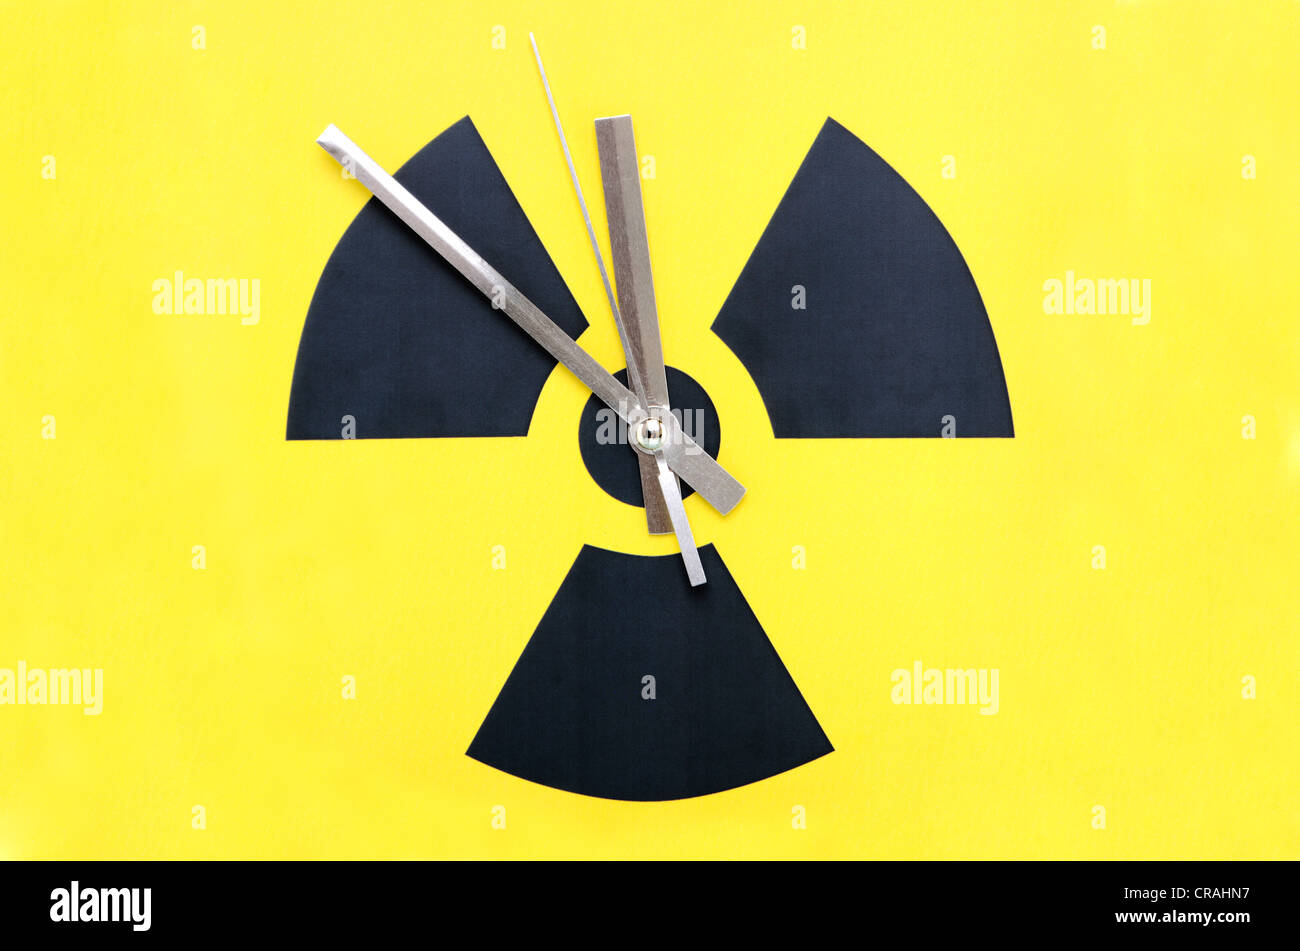 Symbole atomique avec des aiguilles d'horloge fixée à 11:55, image symbolique pour l'élimination de l'énergie nucléaire Banque D'Images